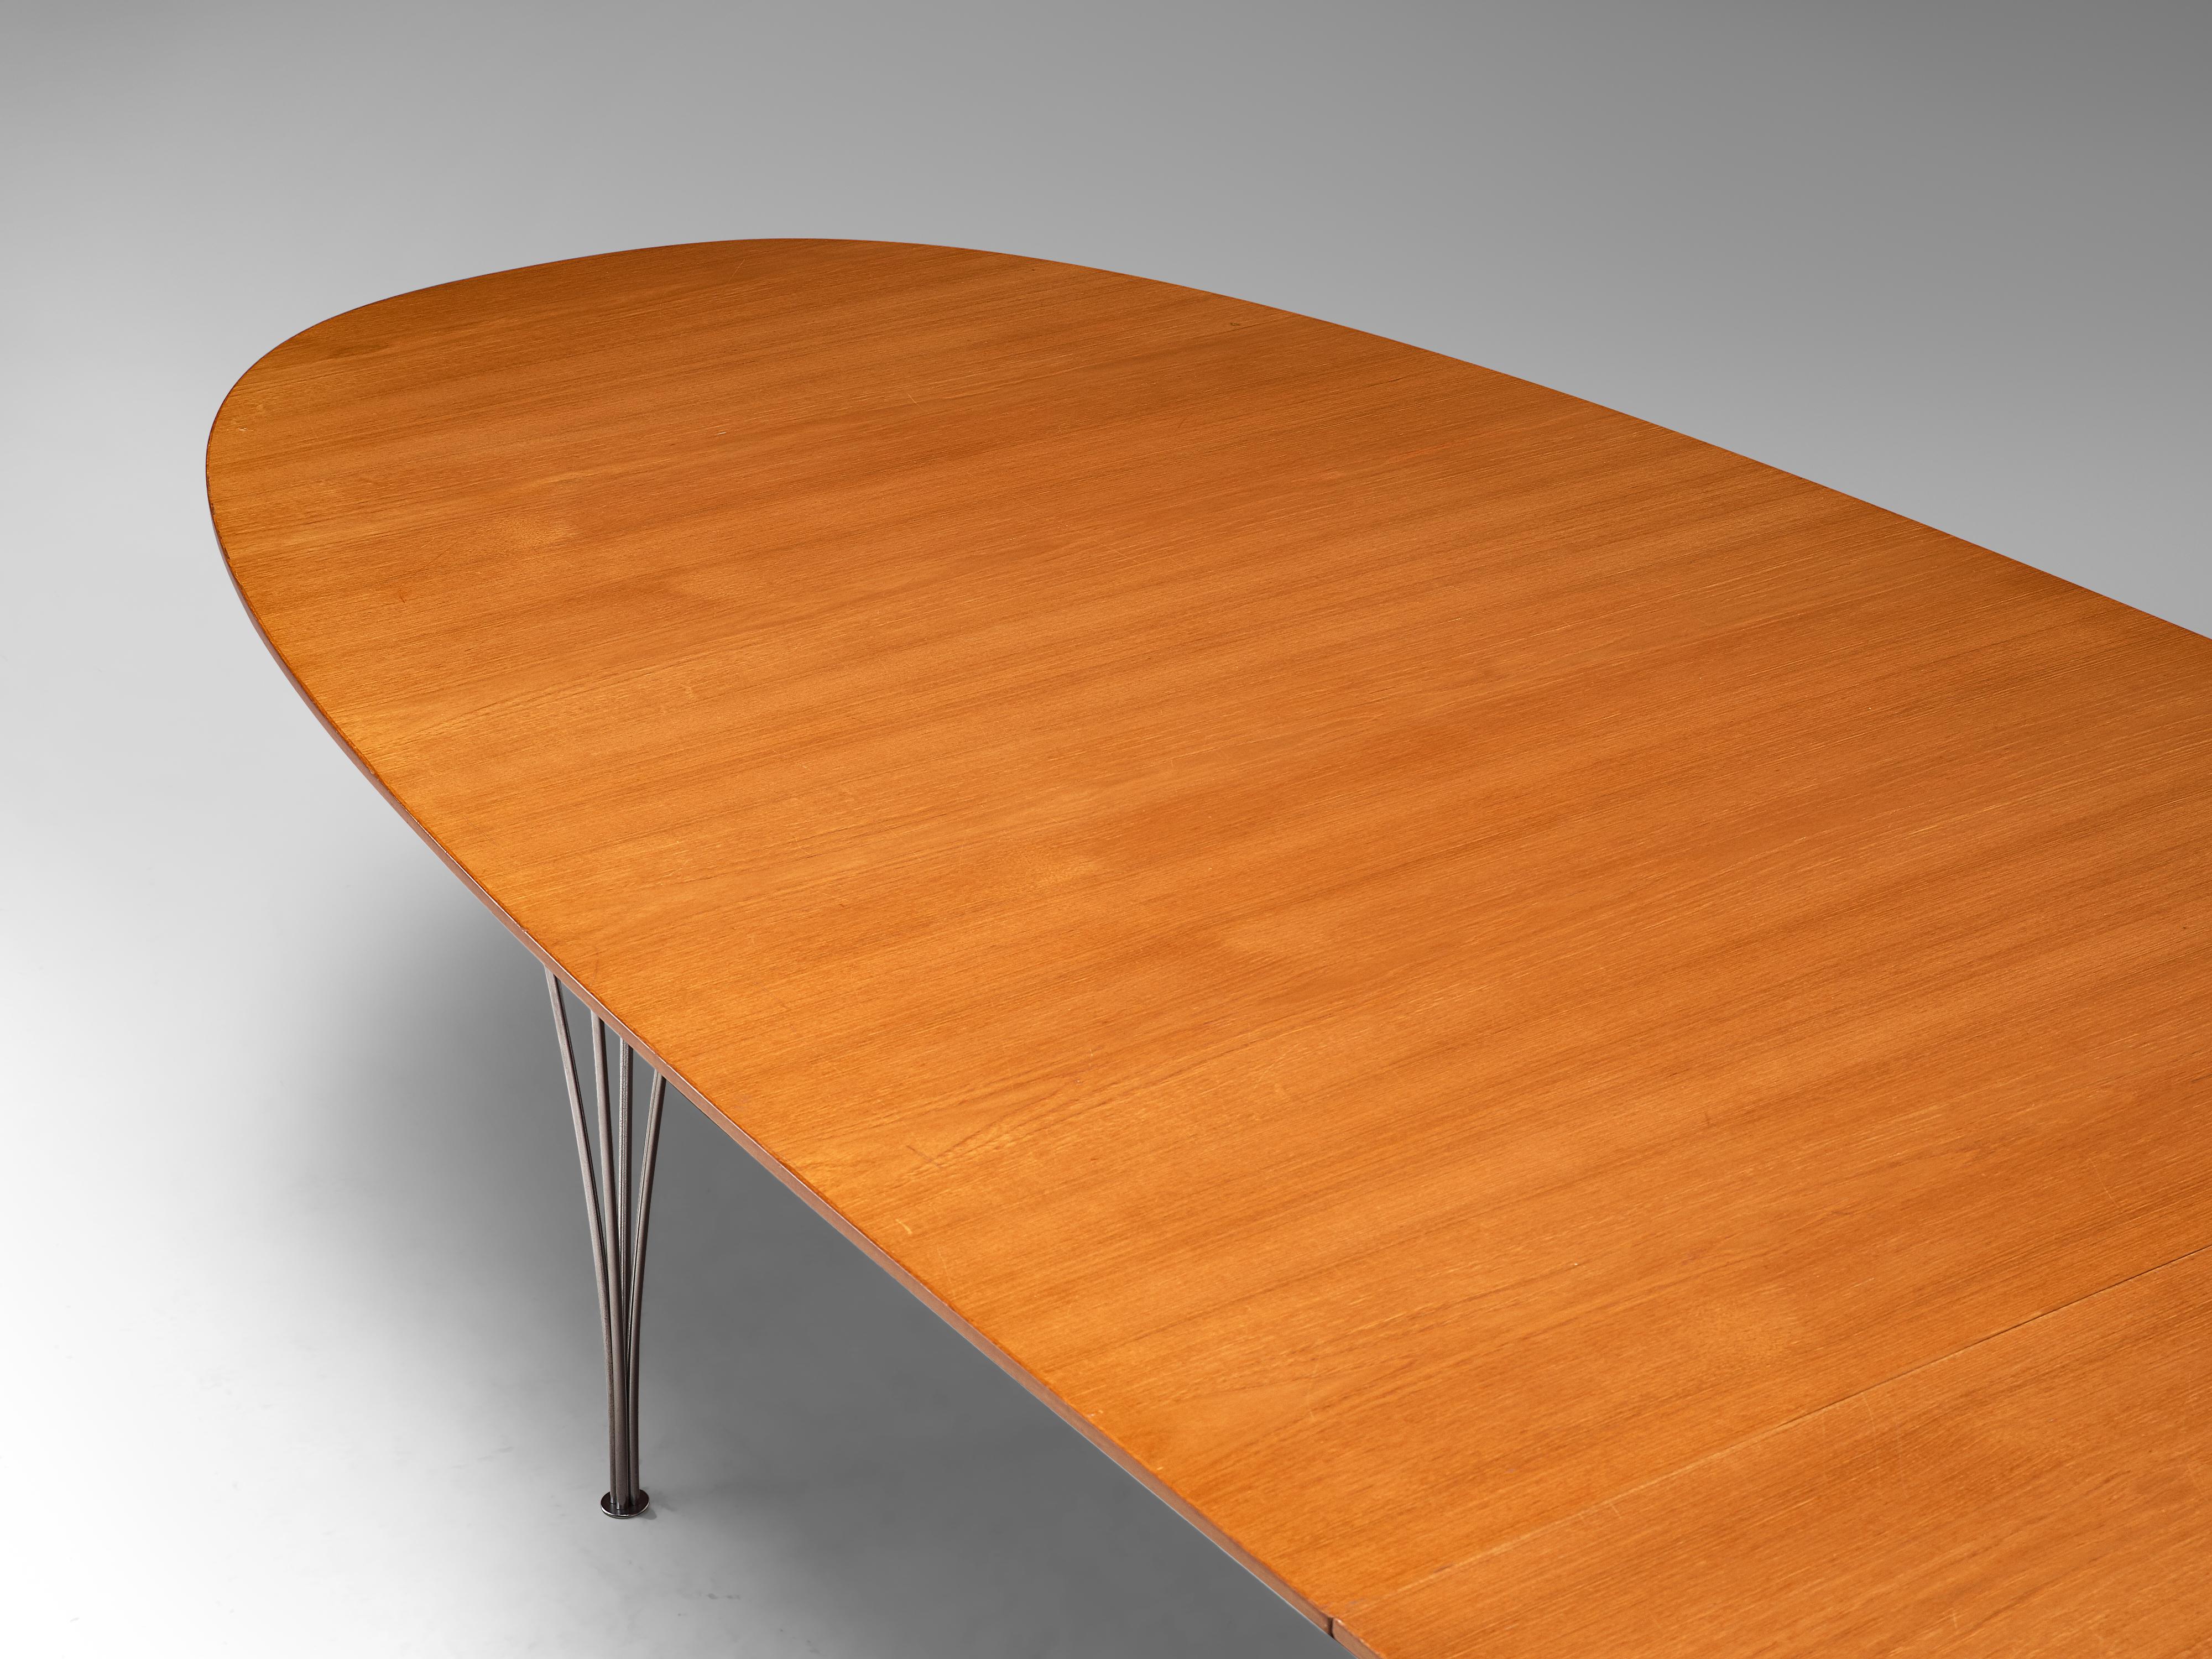 Piet Hein & Bruno Mathsson 'Superellipse' Large Table in Teak 1